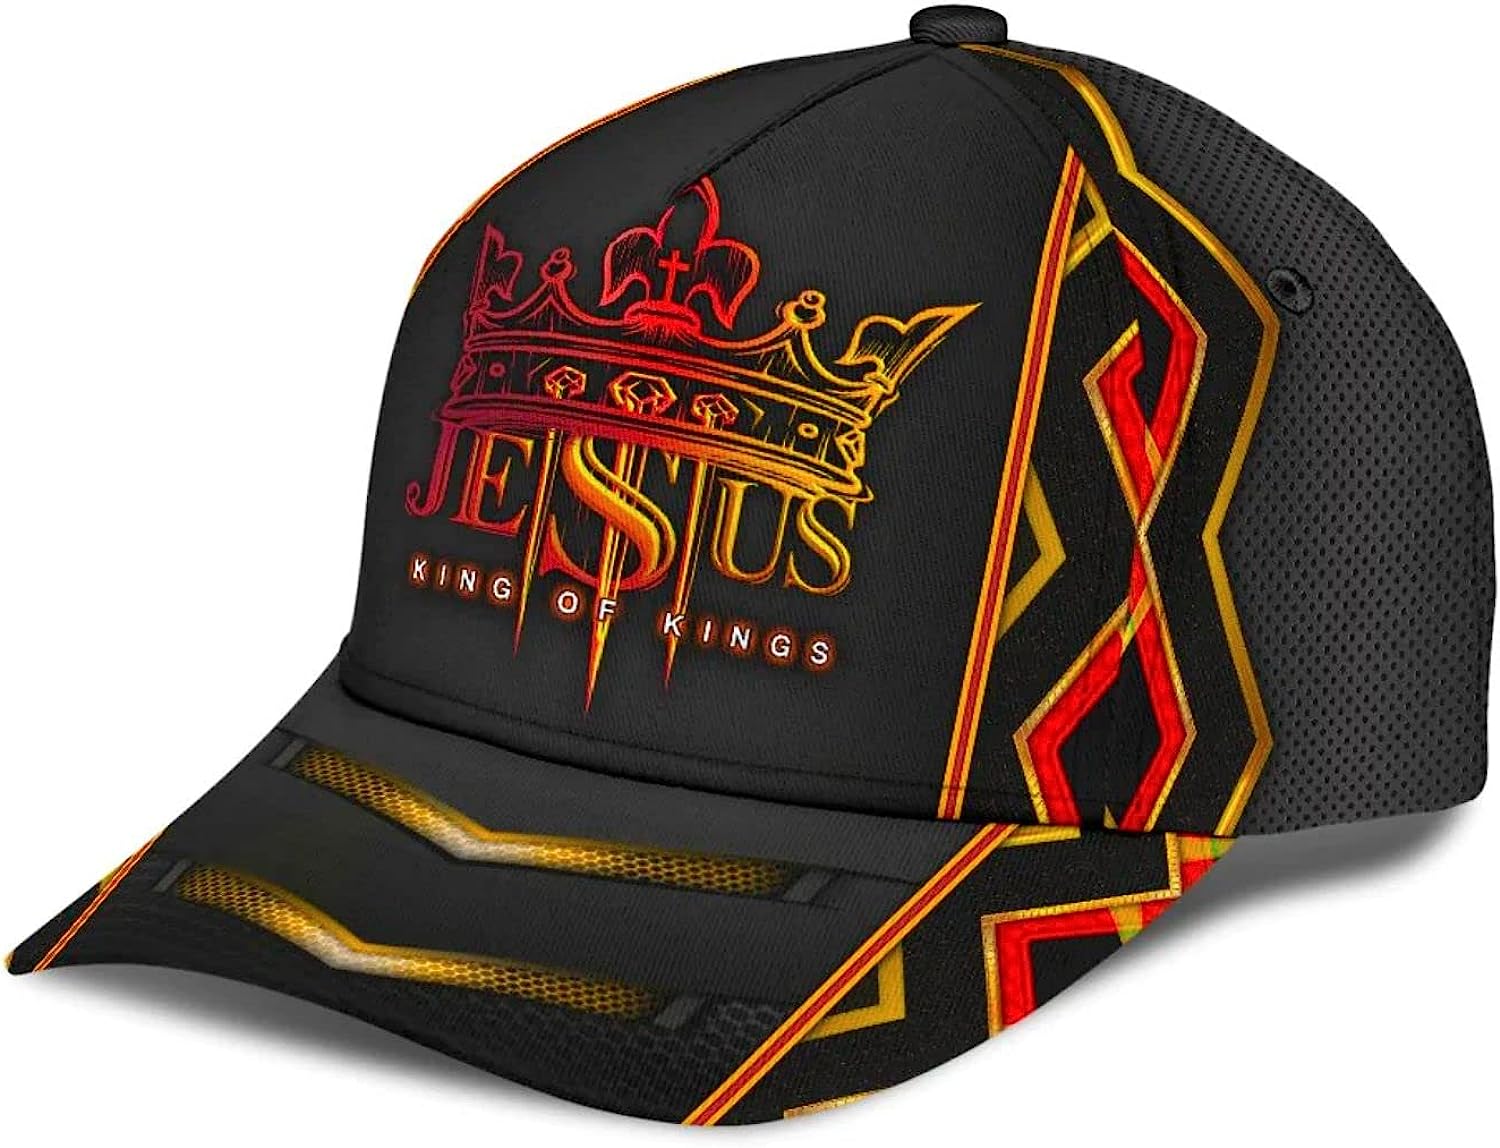 Jesus King Of Kings Baseball Cap - Christian Hats for Men and Women